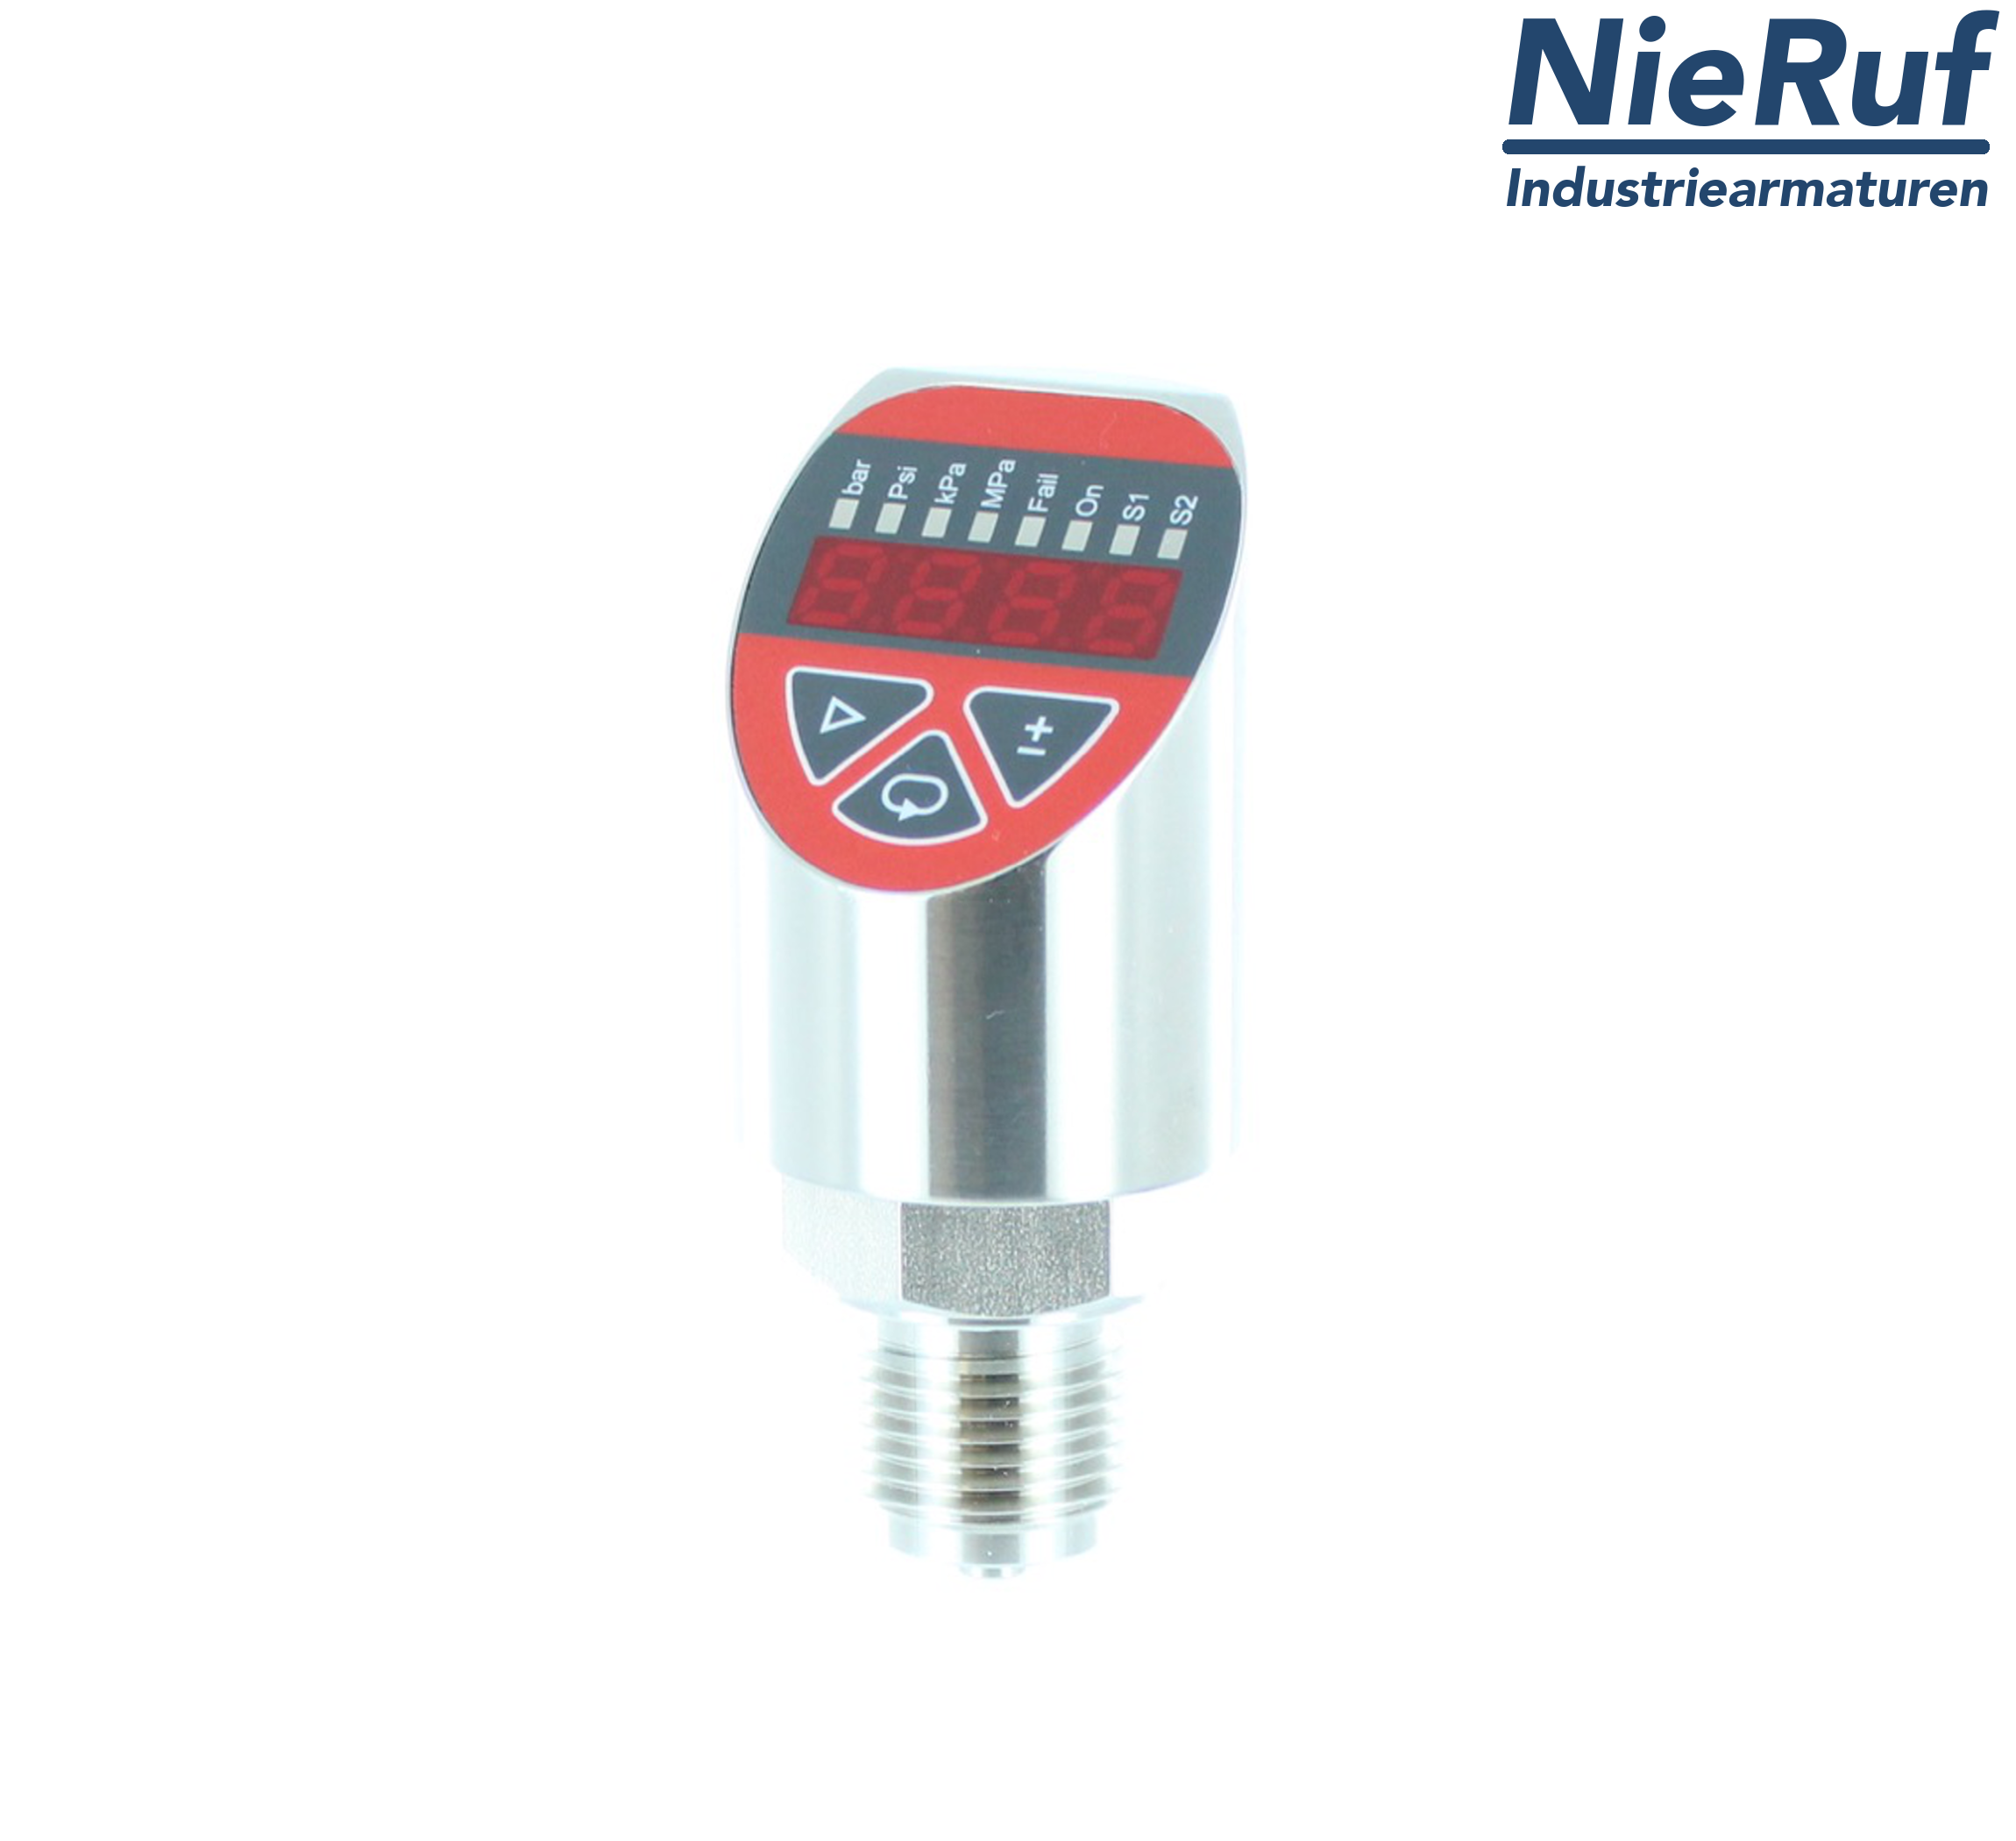 digital pressure sensor G 1/2" B 4-wire: 1xPNP, 1x4 - 20mA, Desina FPM 0,0 - 4,0 bar